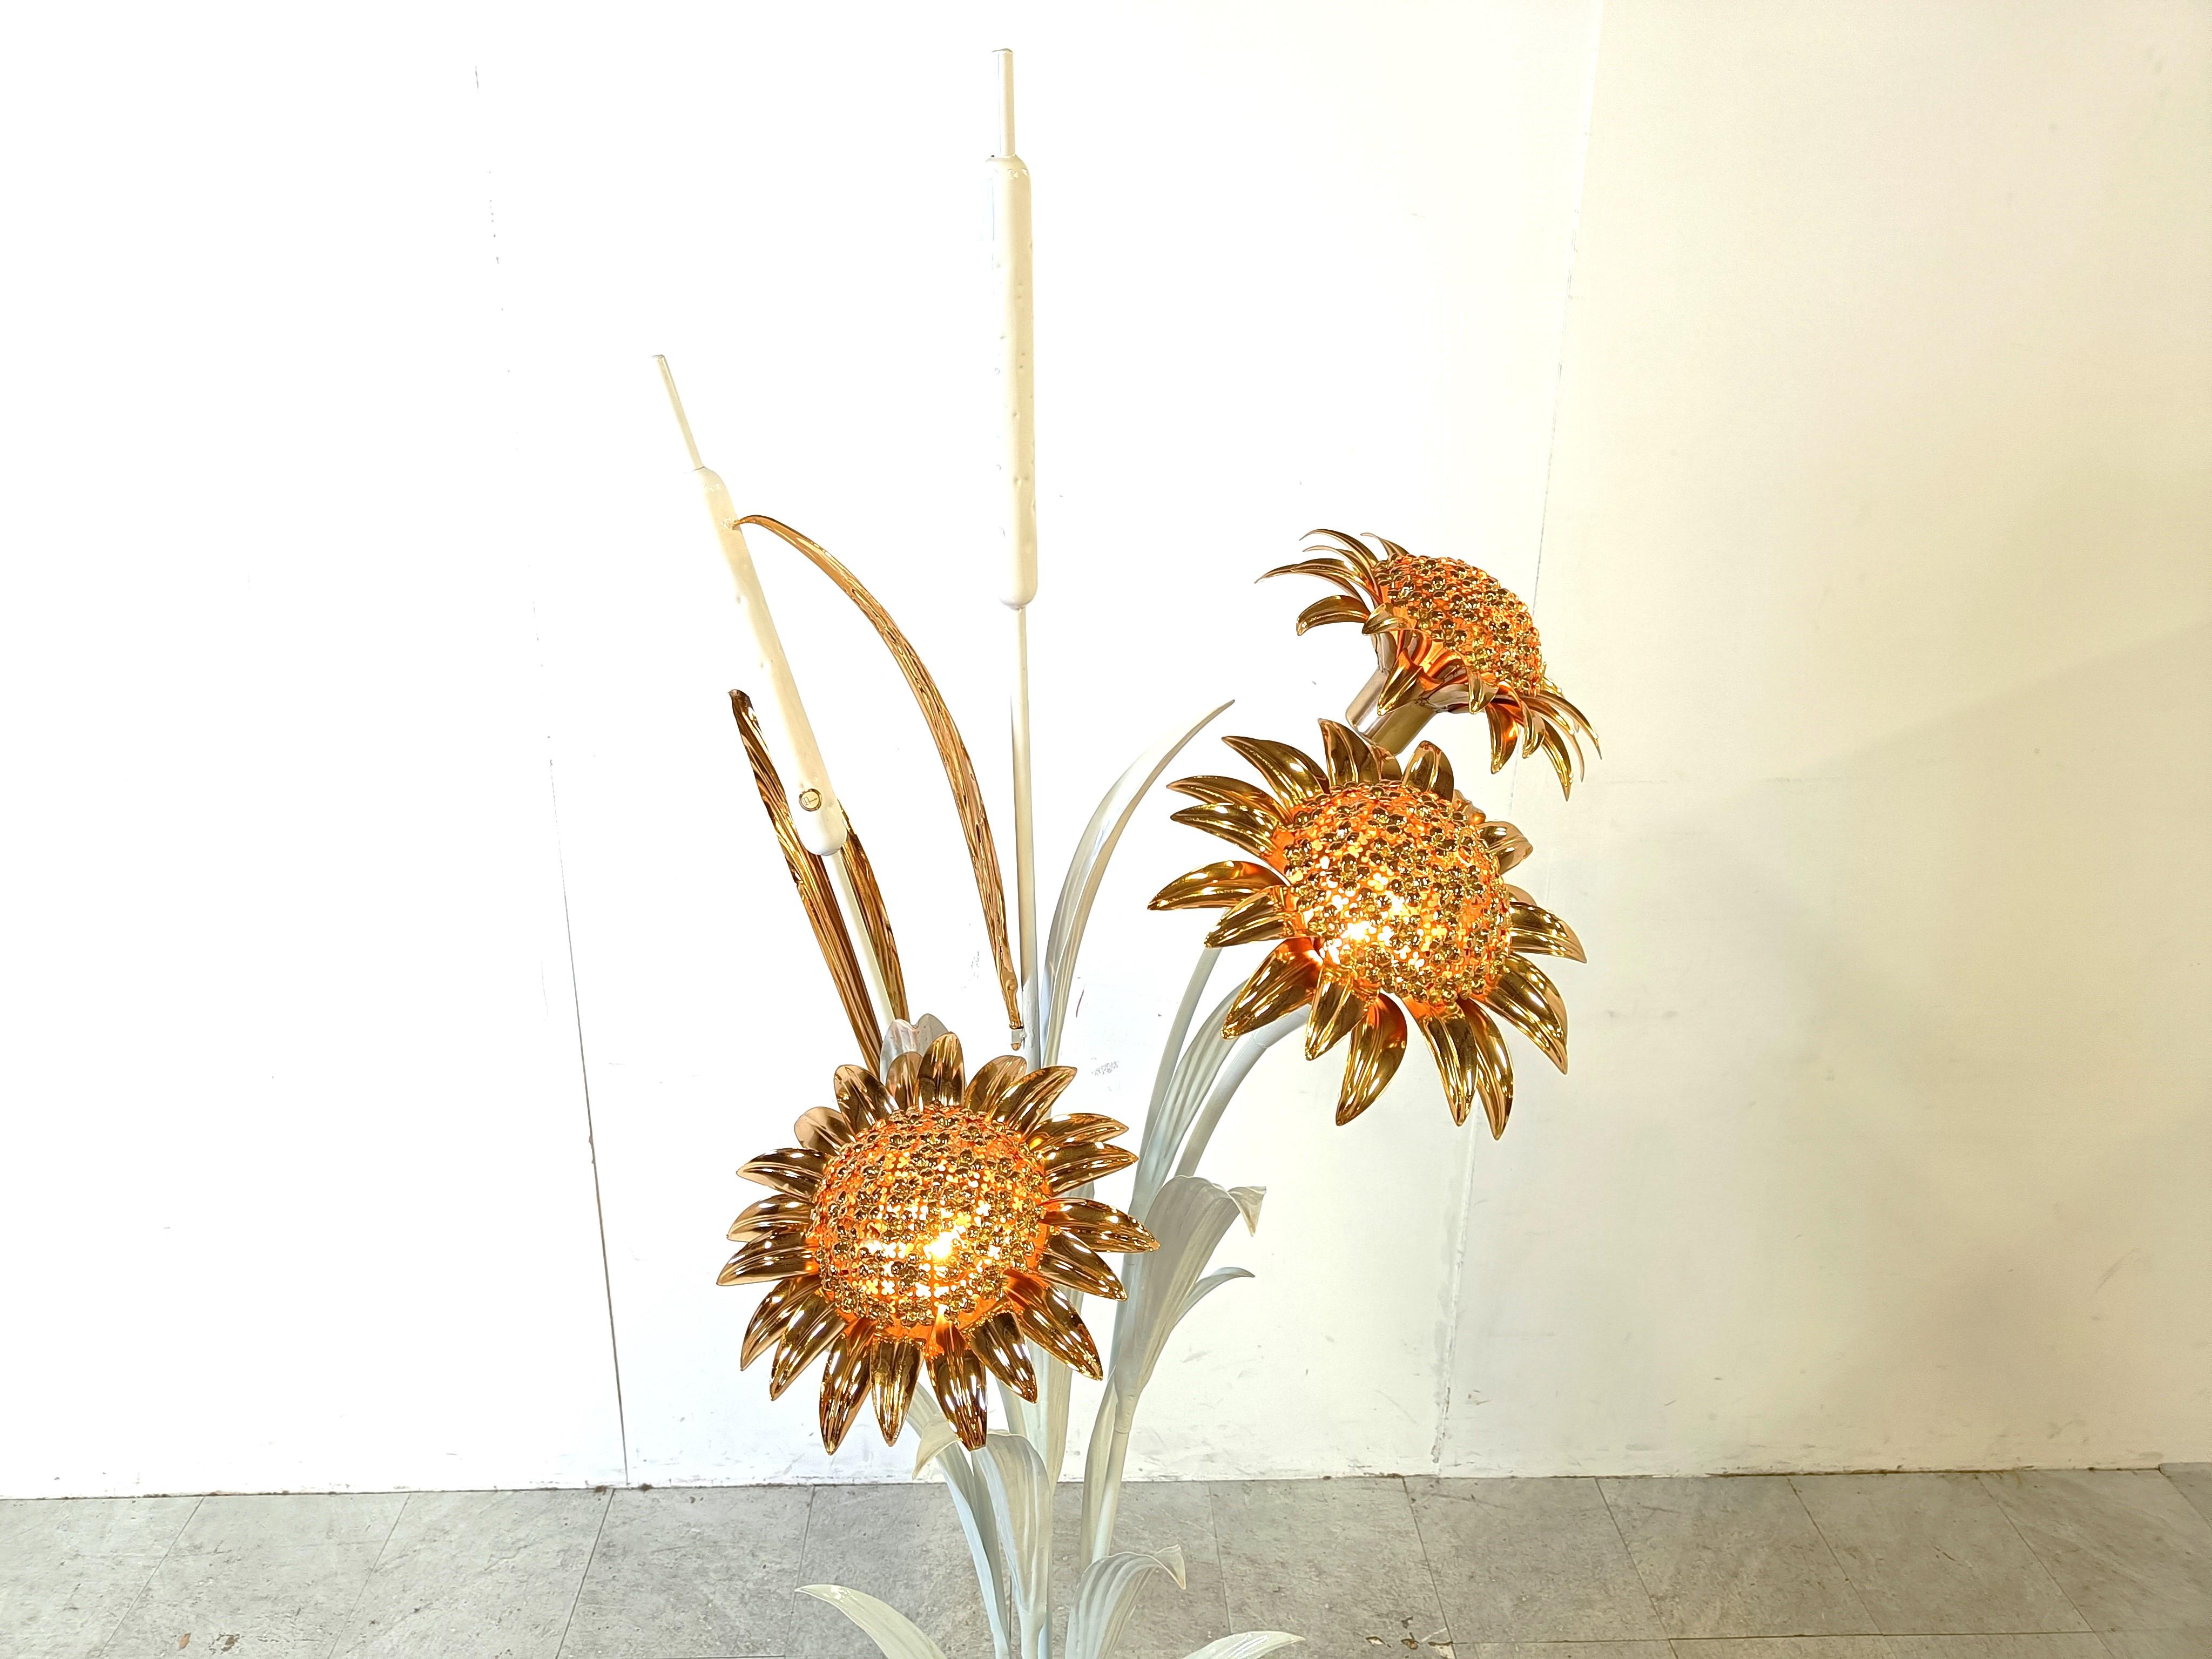 Auffällige und große Stehleuchte von Hans Kögl, bestehend aus einem weiß lackierten Metallsockel mit Weizengarbenmotiv und sehr detaillierten Messingblättern und Sonnenblumen.

Die Sonnenblumen haben integrierte Lichter, die einen fantastischen